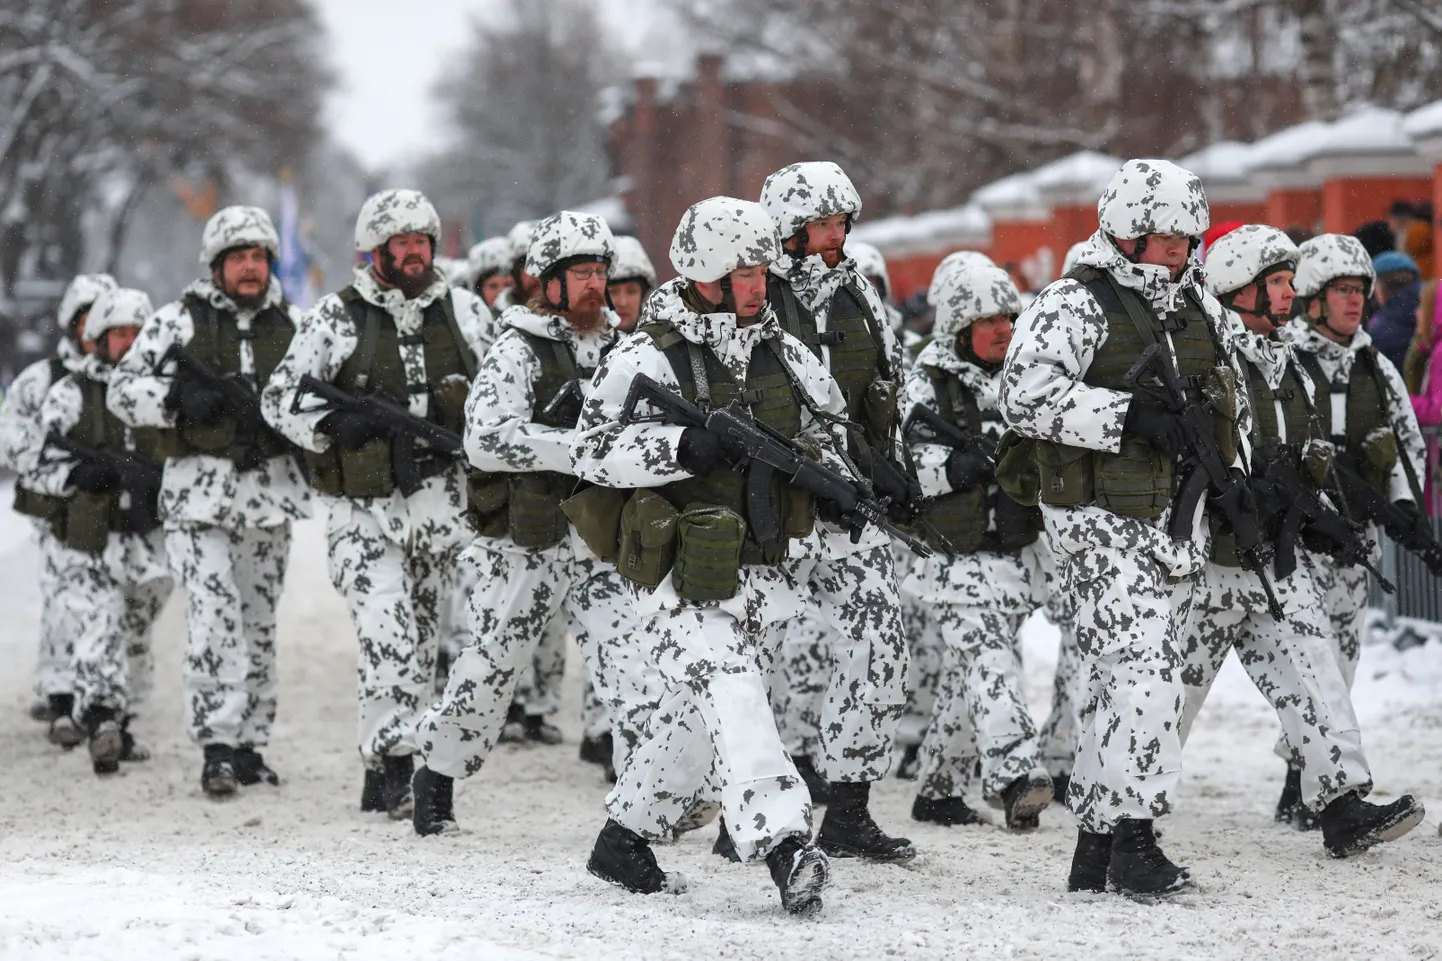 Soome kaitseväelased relvadega. Foto on illustratiivne.